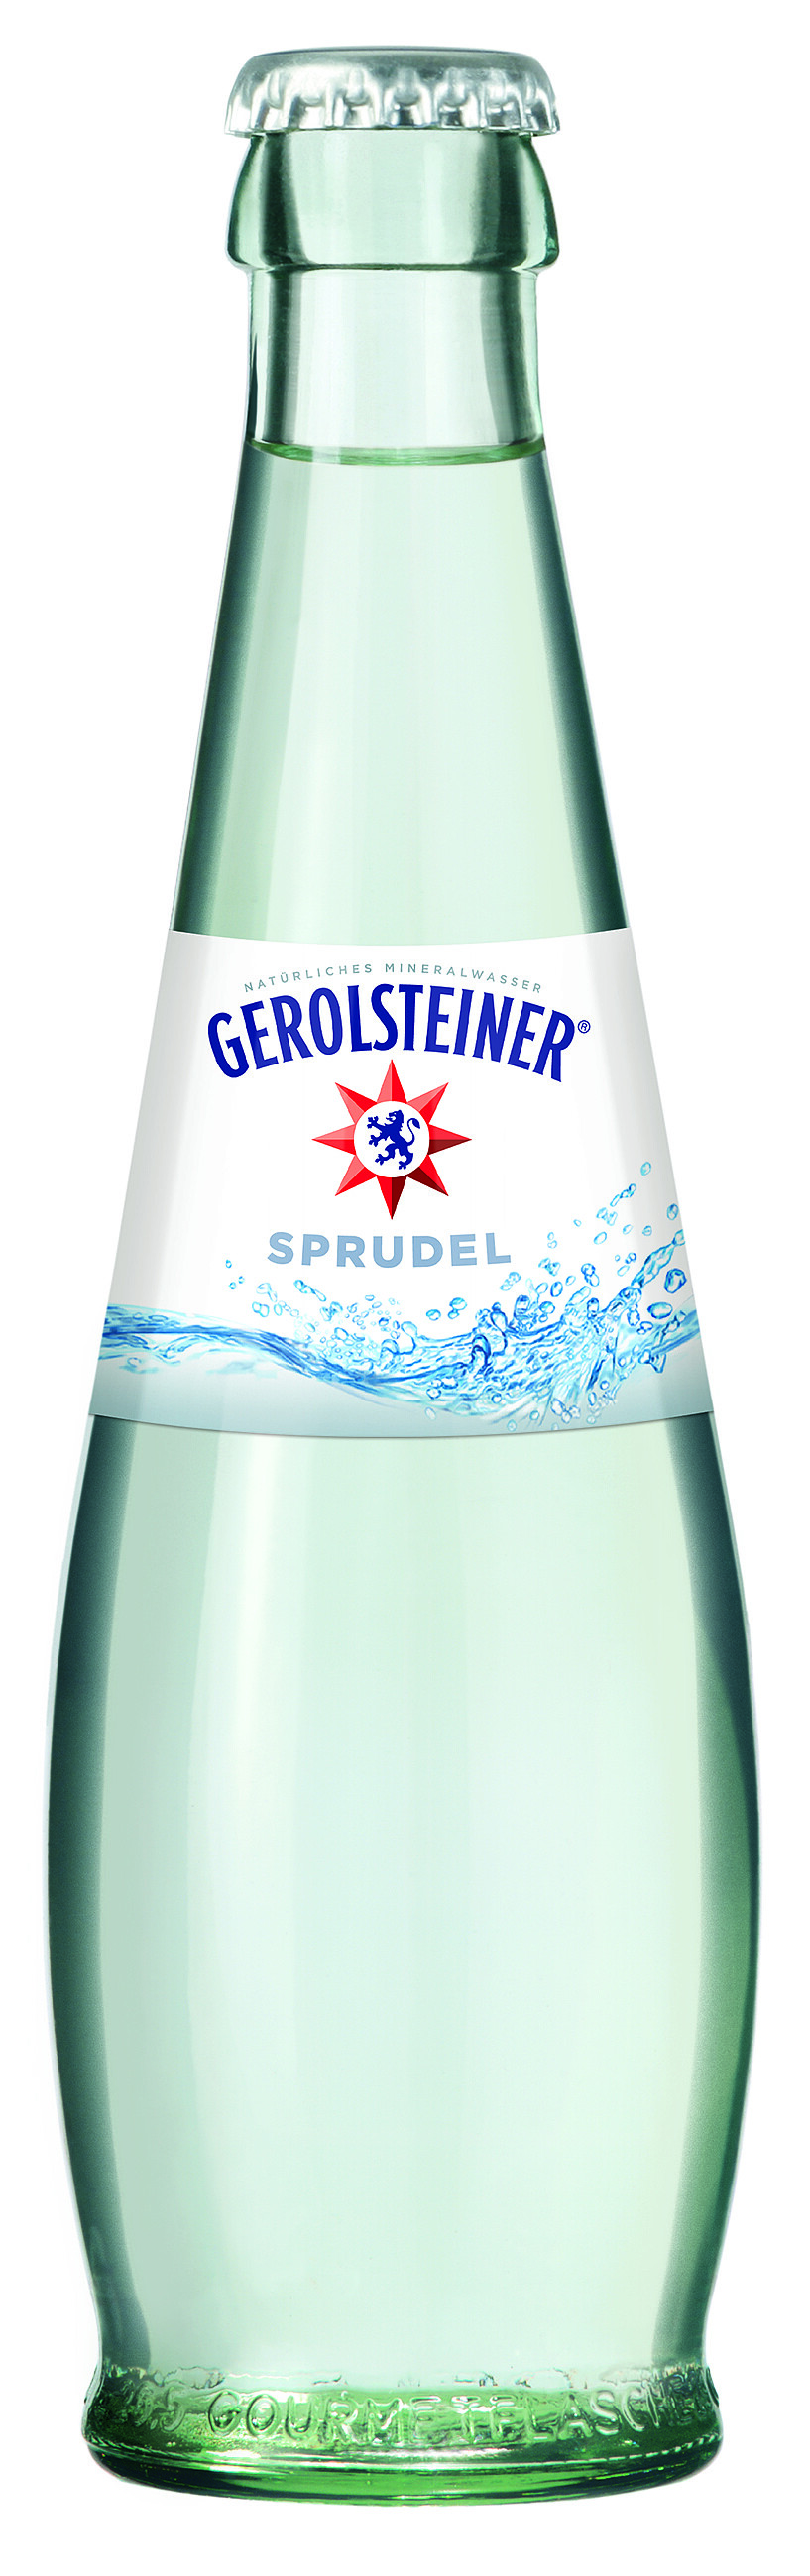 Gerolsteiner Gourmet classic Glas 0,25 Liter 